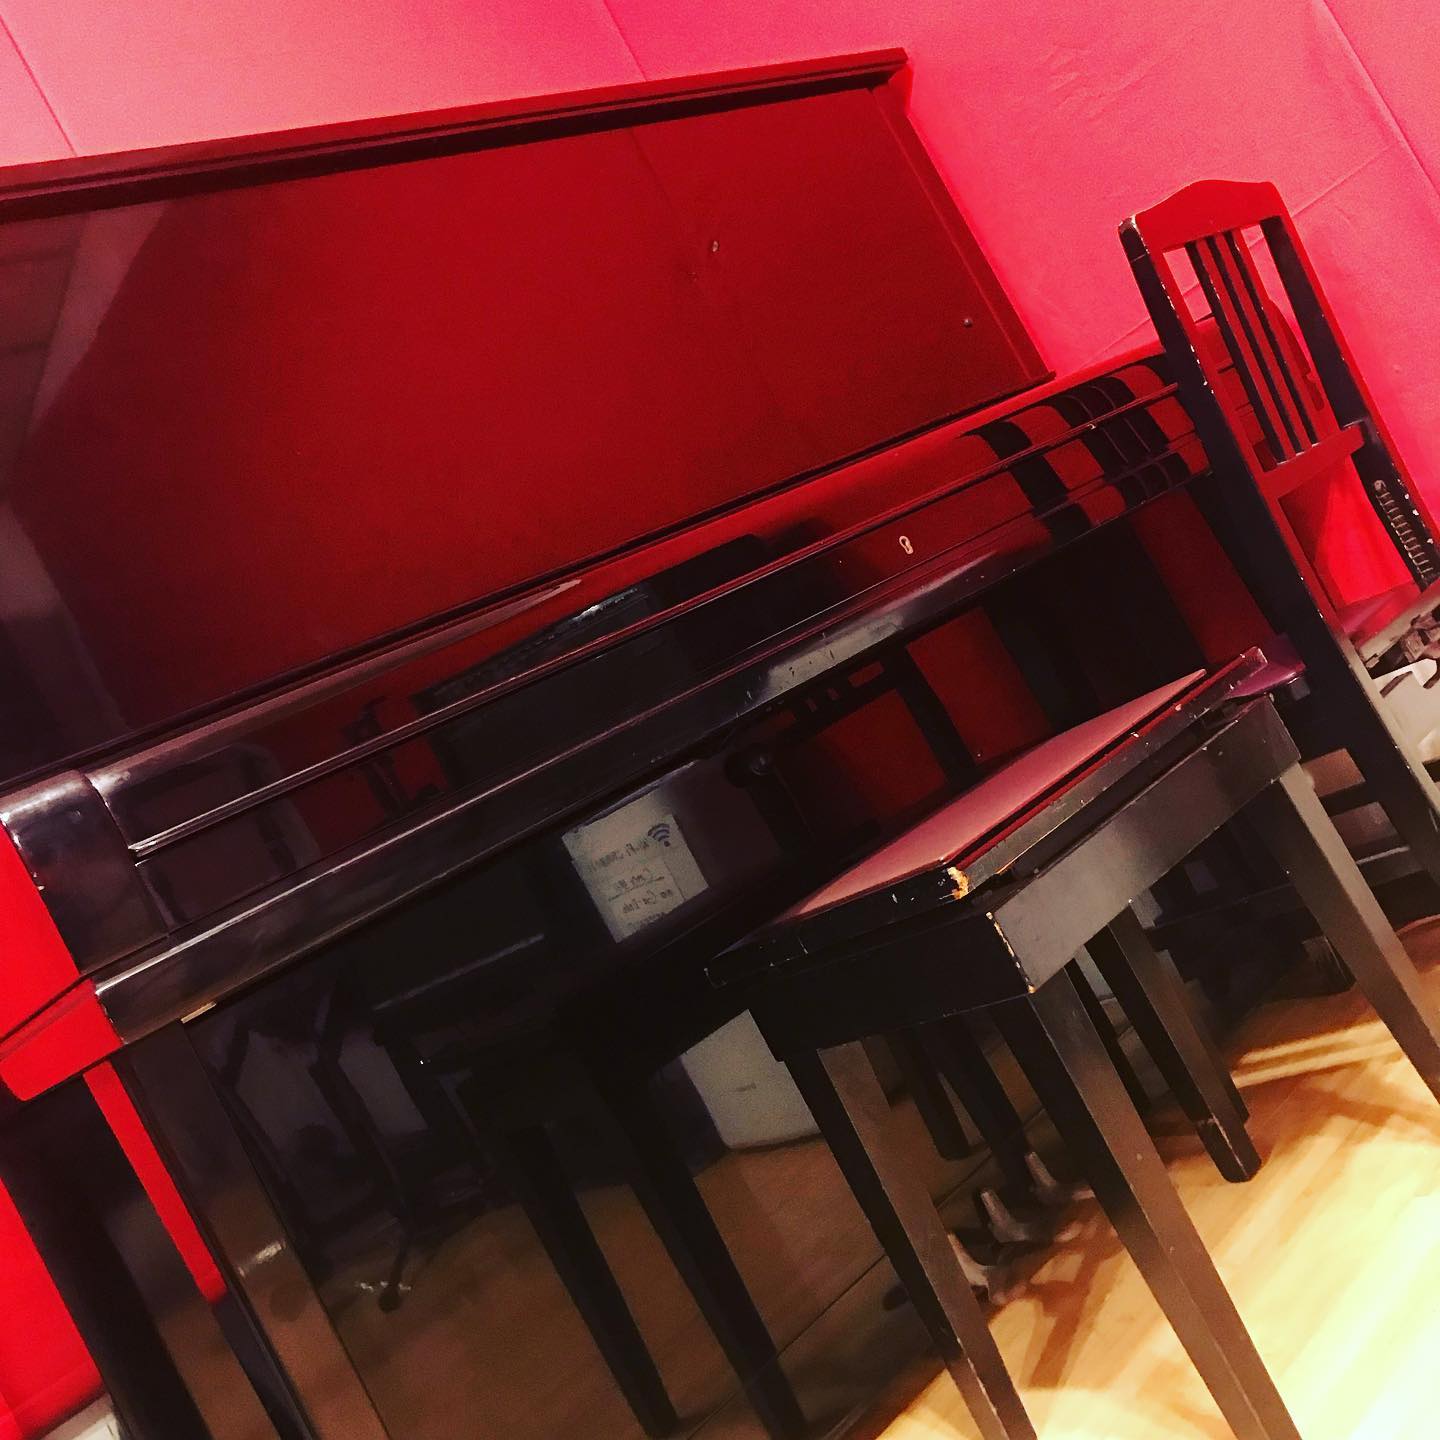 音大受験目的でピアノ利用のお問い合わせをいただきました当店Cスタジオにあるアップライトピアノは1時間550円でお貸ししています。様々な用途でスタジオをご利用いただけると大変嬉しいですバンドのモニターキャンペーンも募集中です。#音楽スタジオ #musicstudio #アップライトピアノ #uprightpiano #ピアノ #piano #音大#音楽大学 #受験 #名古屋 #nagoya #千種区 #chikusa #音楽 #music #楽器#instrument #ギター #guitar #ベース #bass #ドラム #drums #ヴォーカル #vocals #キーボード #keyboard #配信 #ライブ配信 #streaming